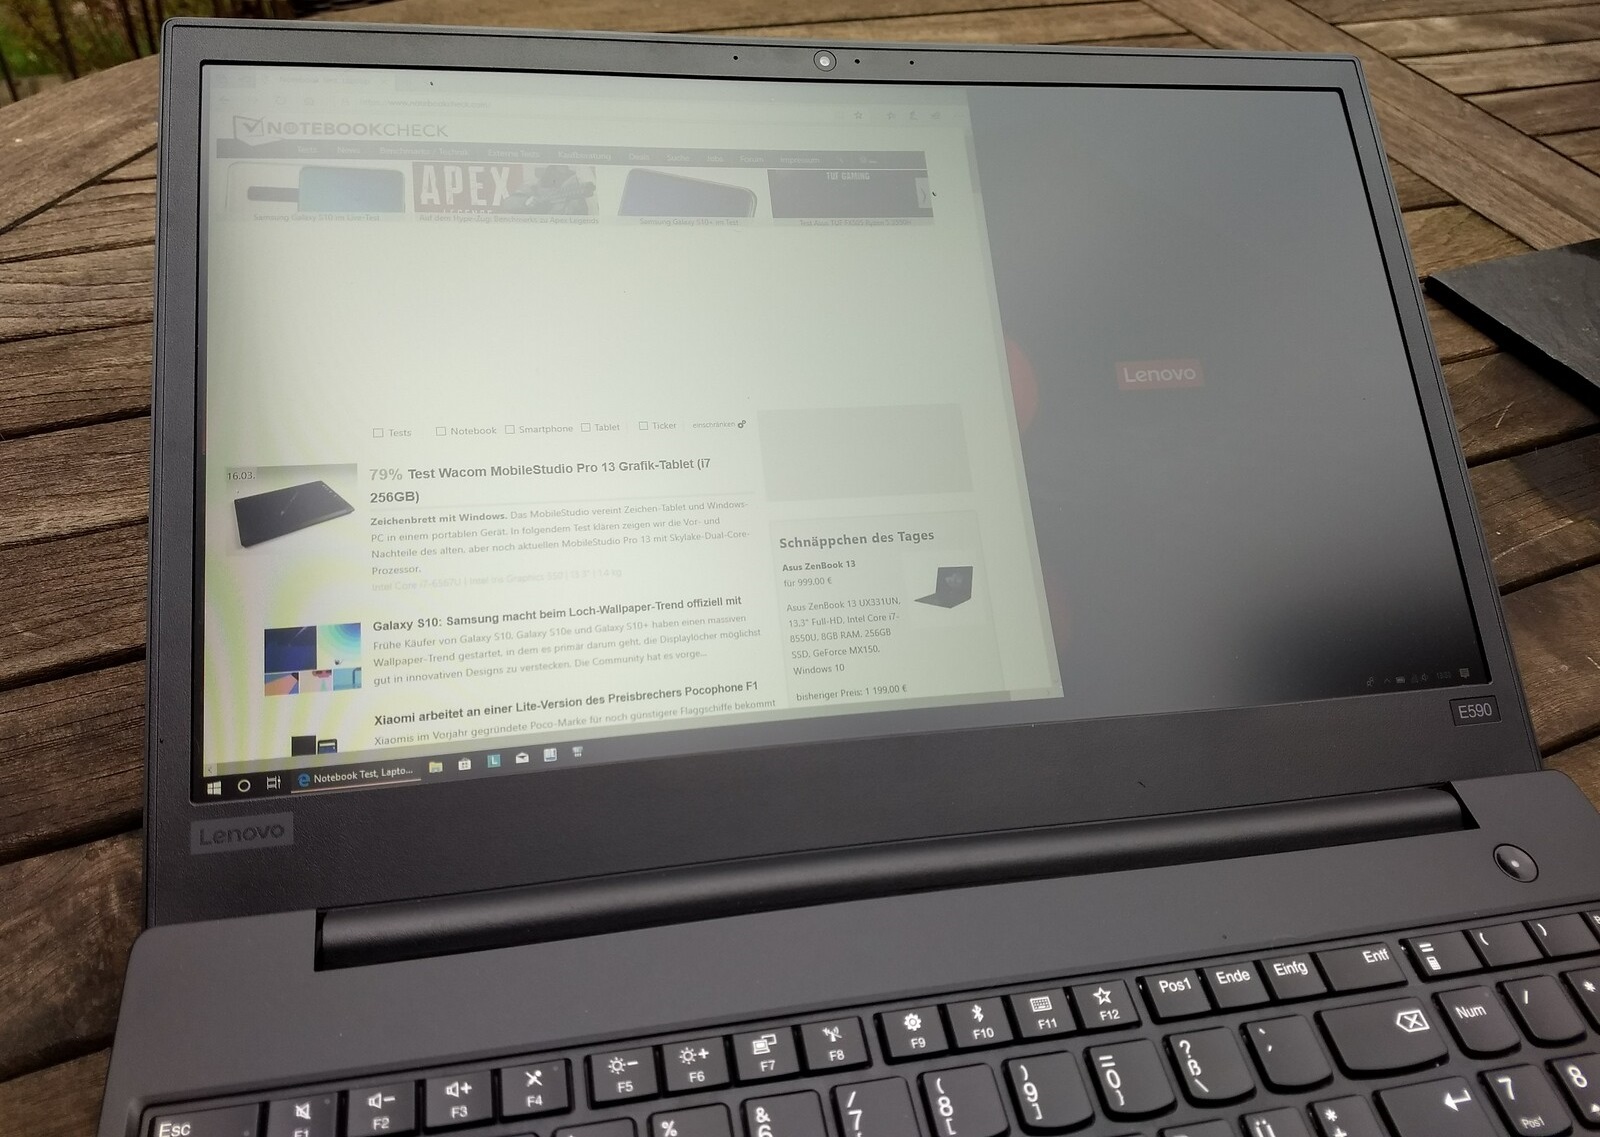 Đánh giá laptop Lenovo ThinkPad E590: Laptop văn phòng giá tốt, Chuyên trang tư vấn laptop